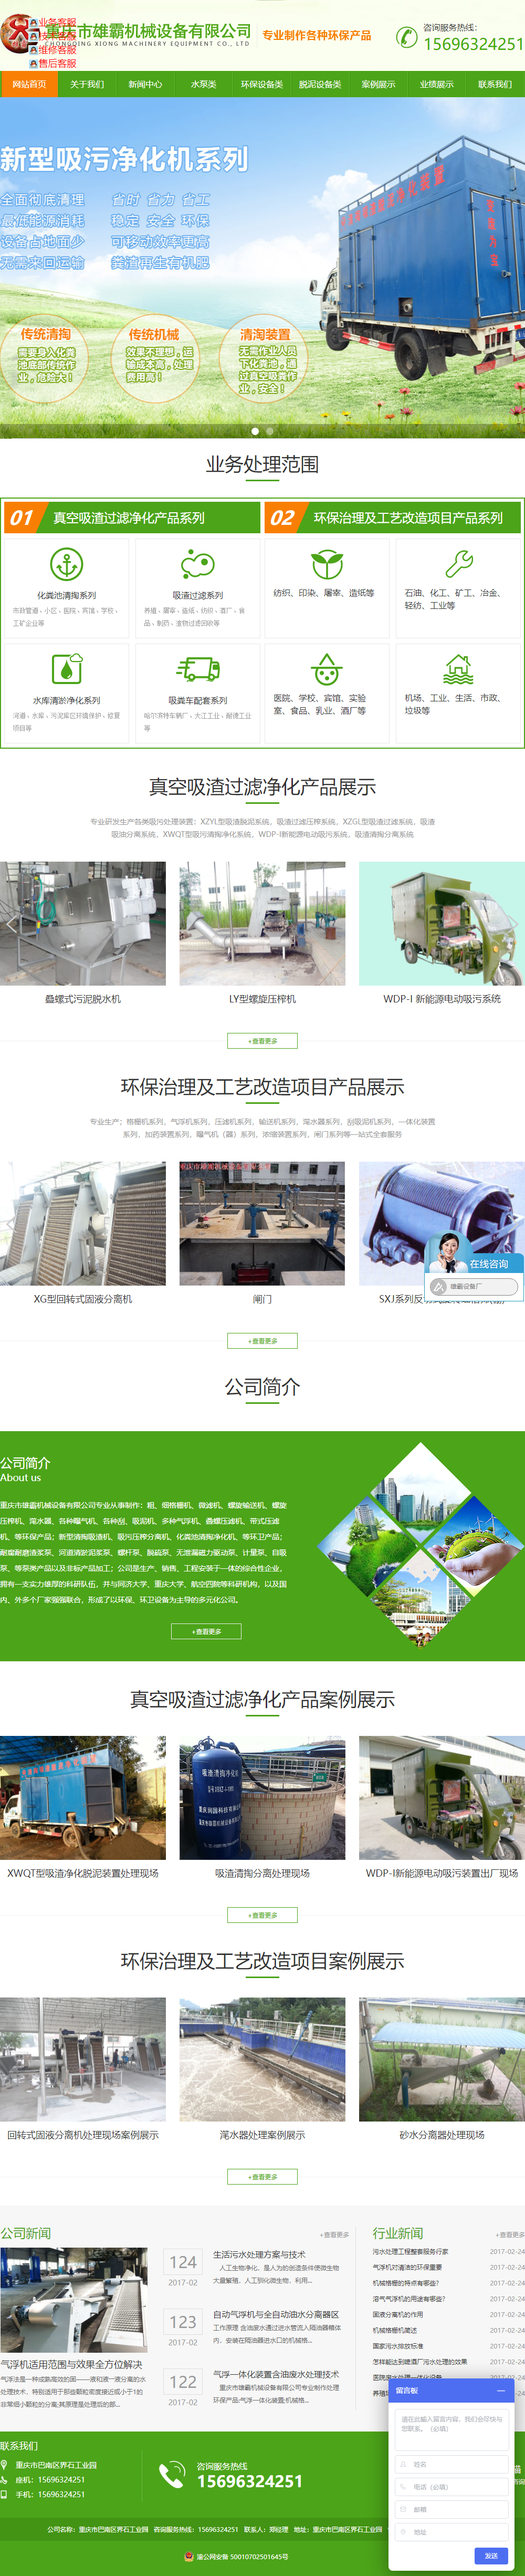 重庆市雄霸机械设备有限公司网站案例